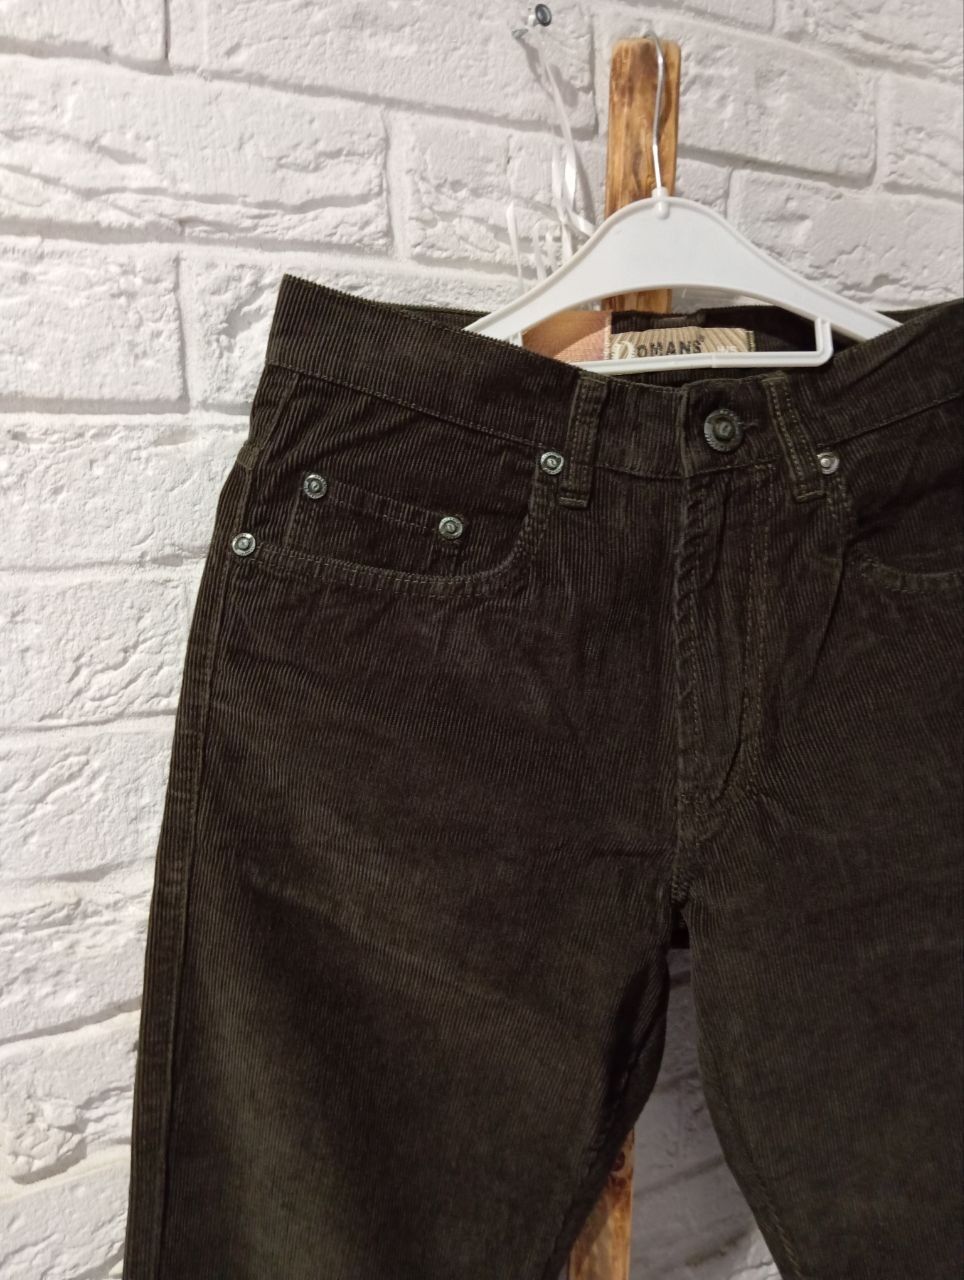 Чоловічі вельветові штани Omans jeans